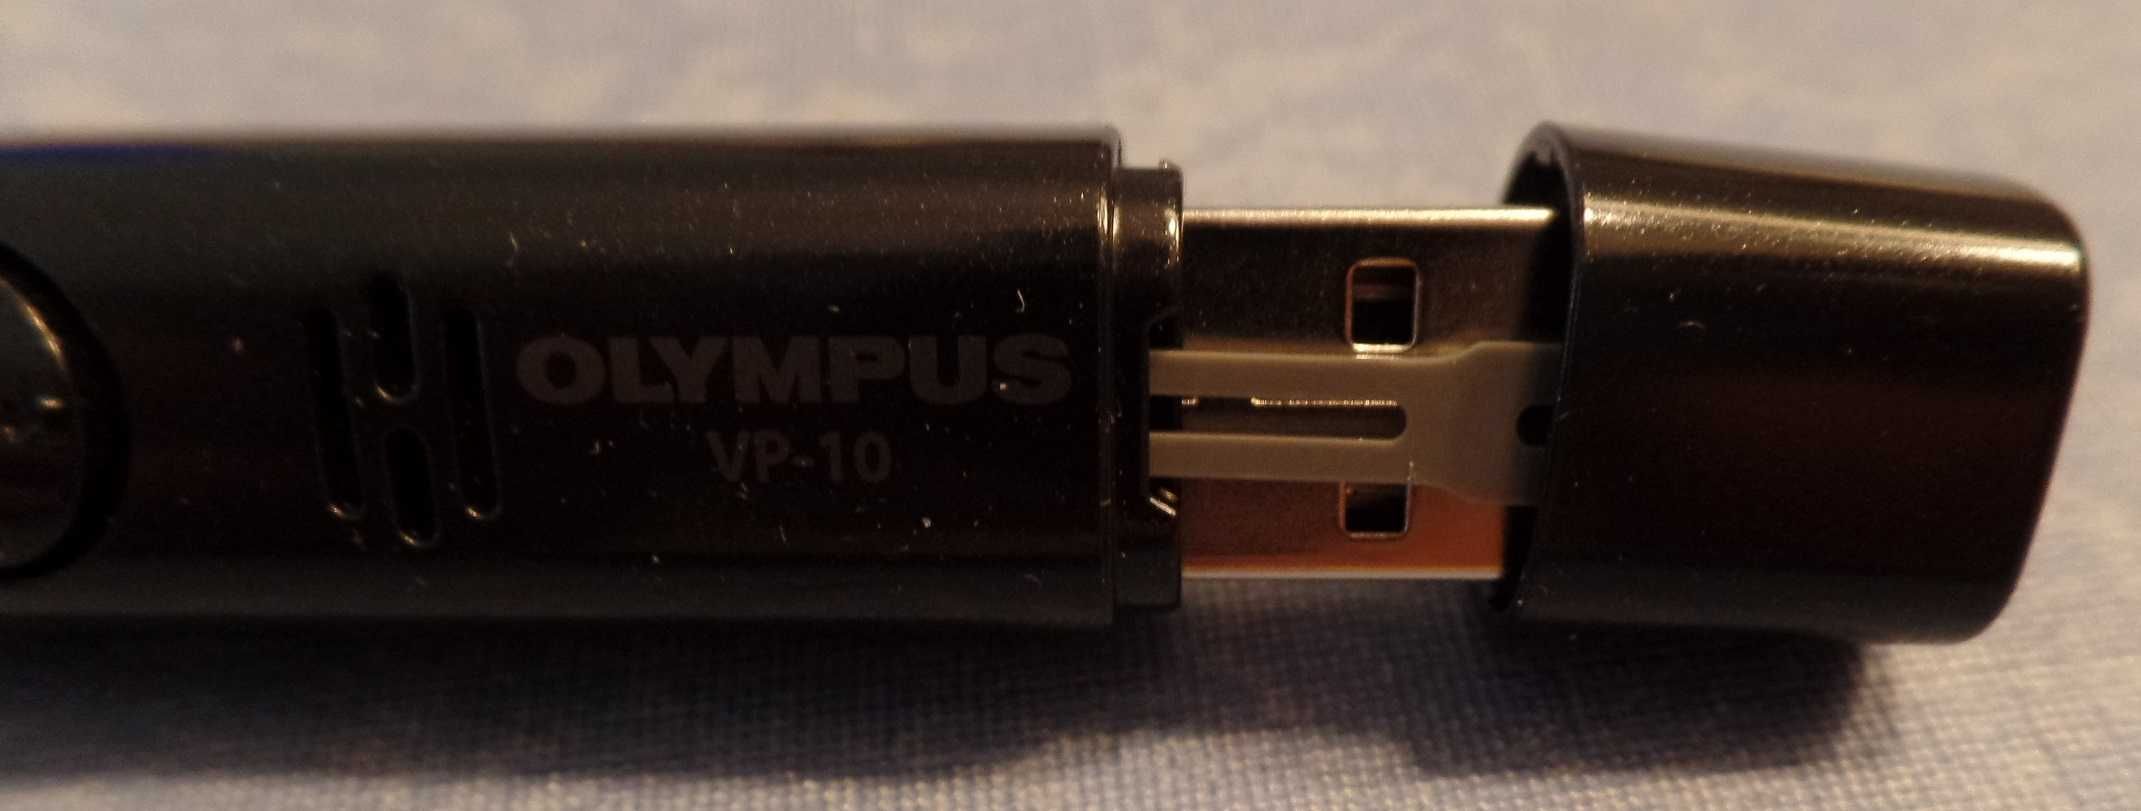 Gravador de Voz Digital Olympus VP-10 Novo (917)